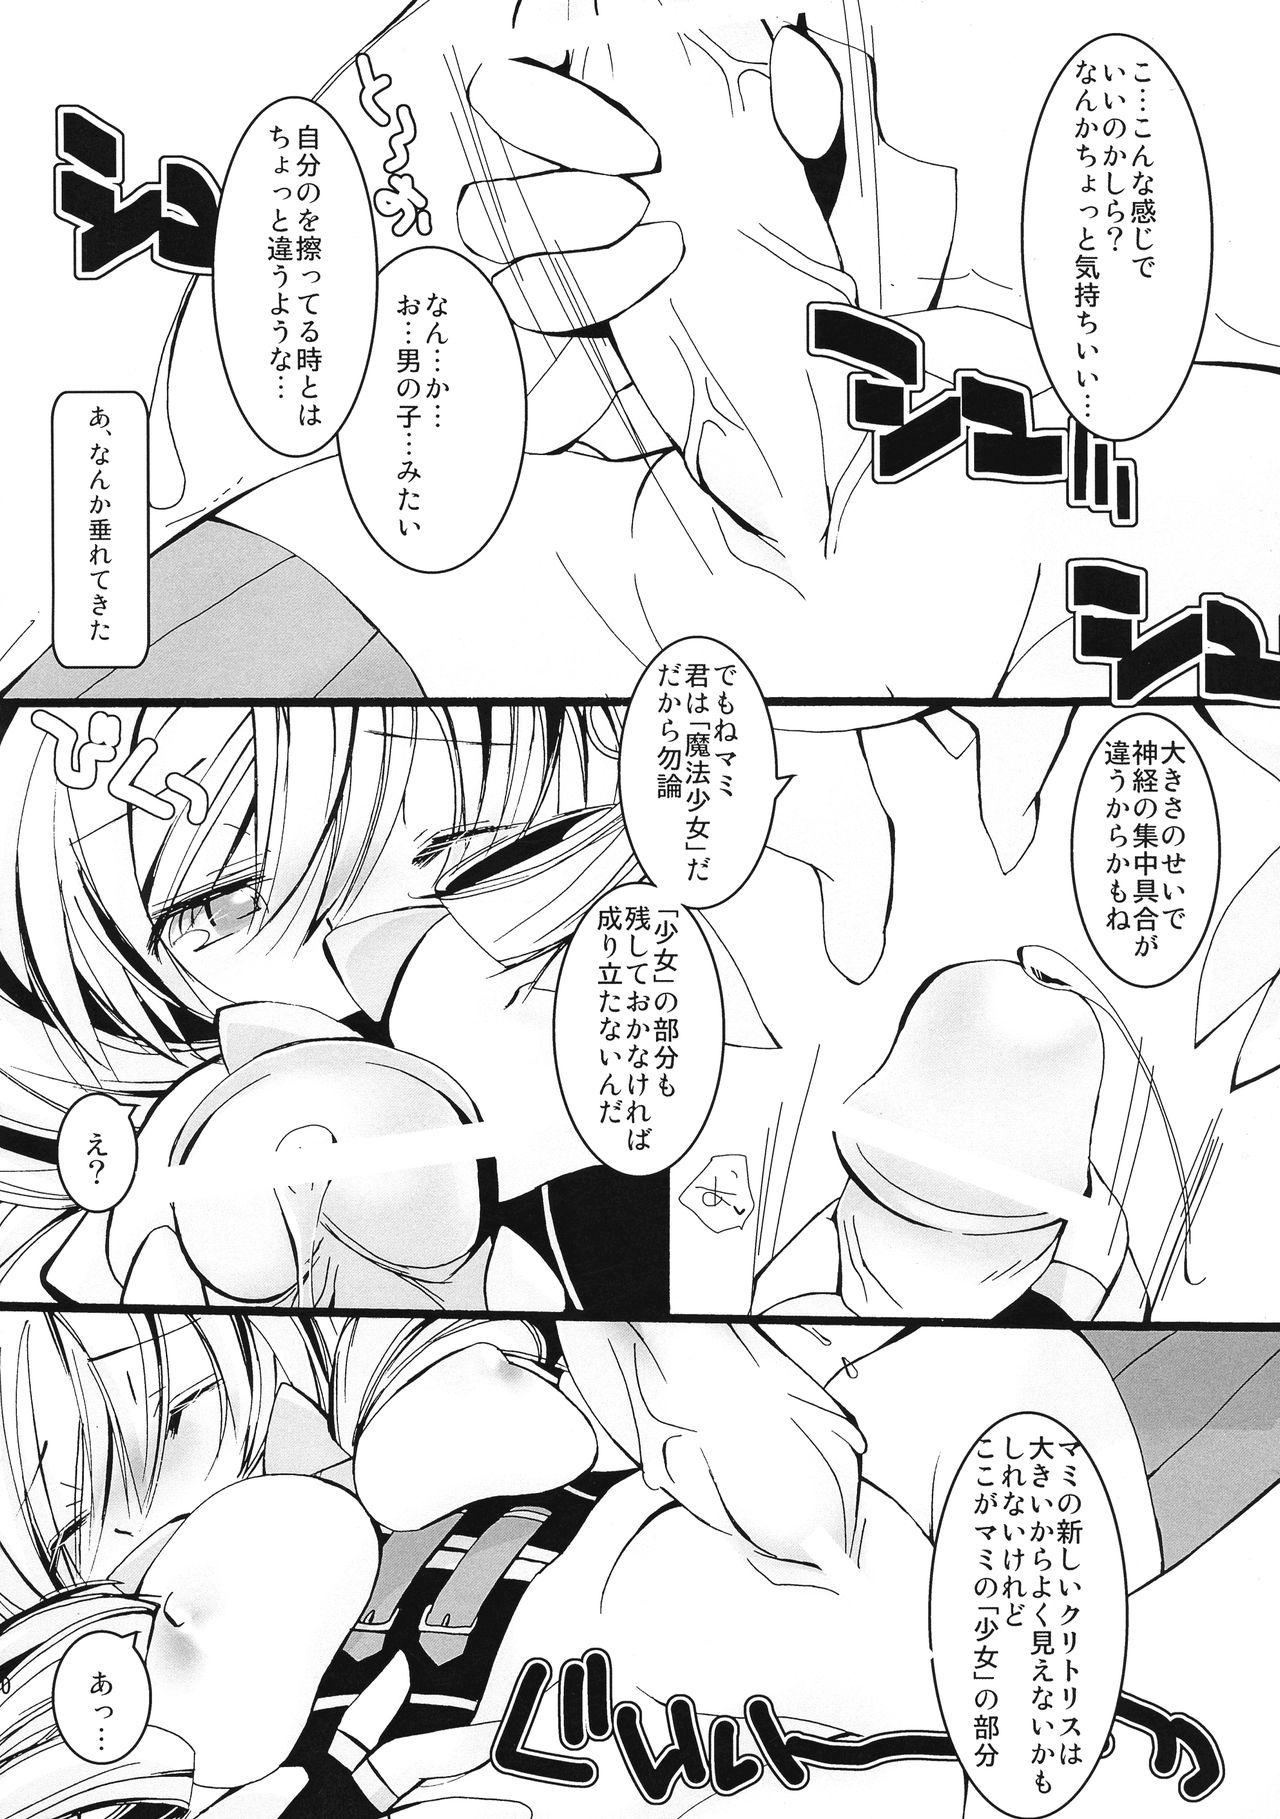 Mask Kore wa Mahou Shoujo desu ka? - Puella magi madoka magica Exgirlfriend - Page 9